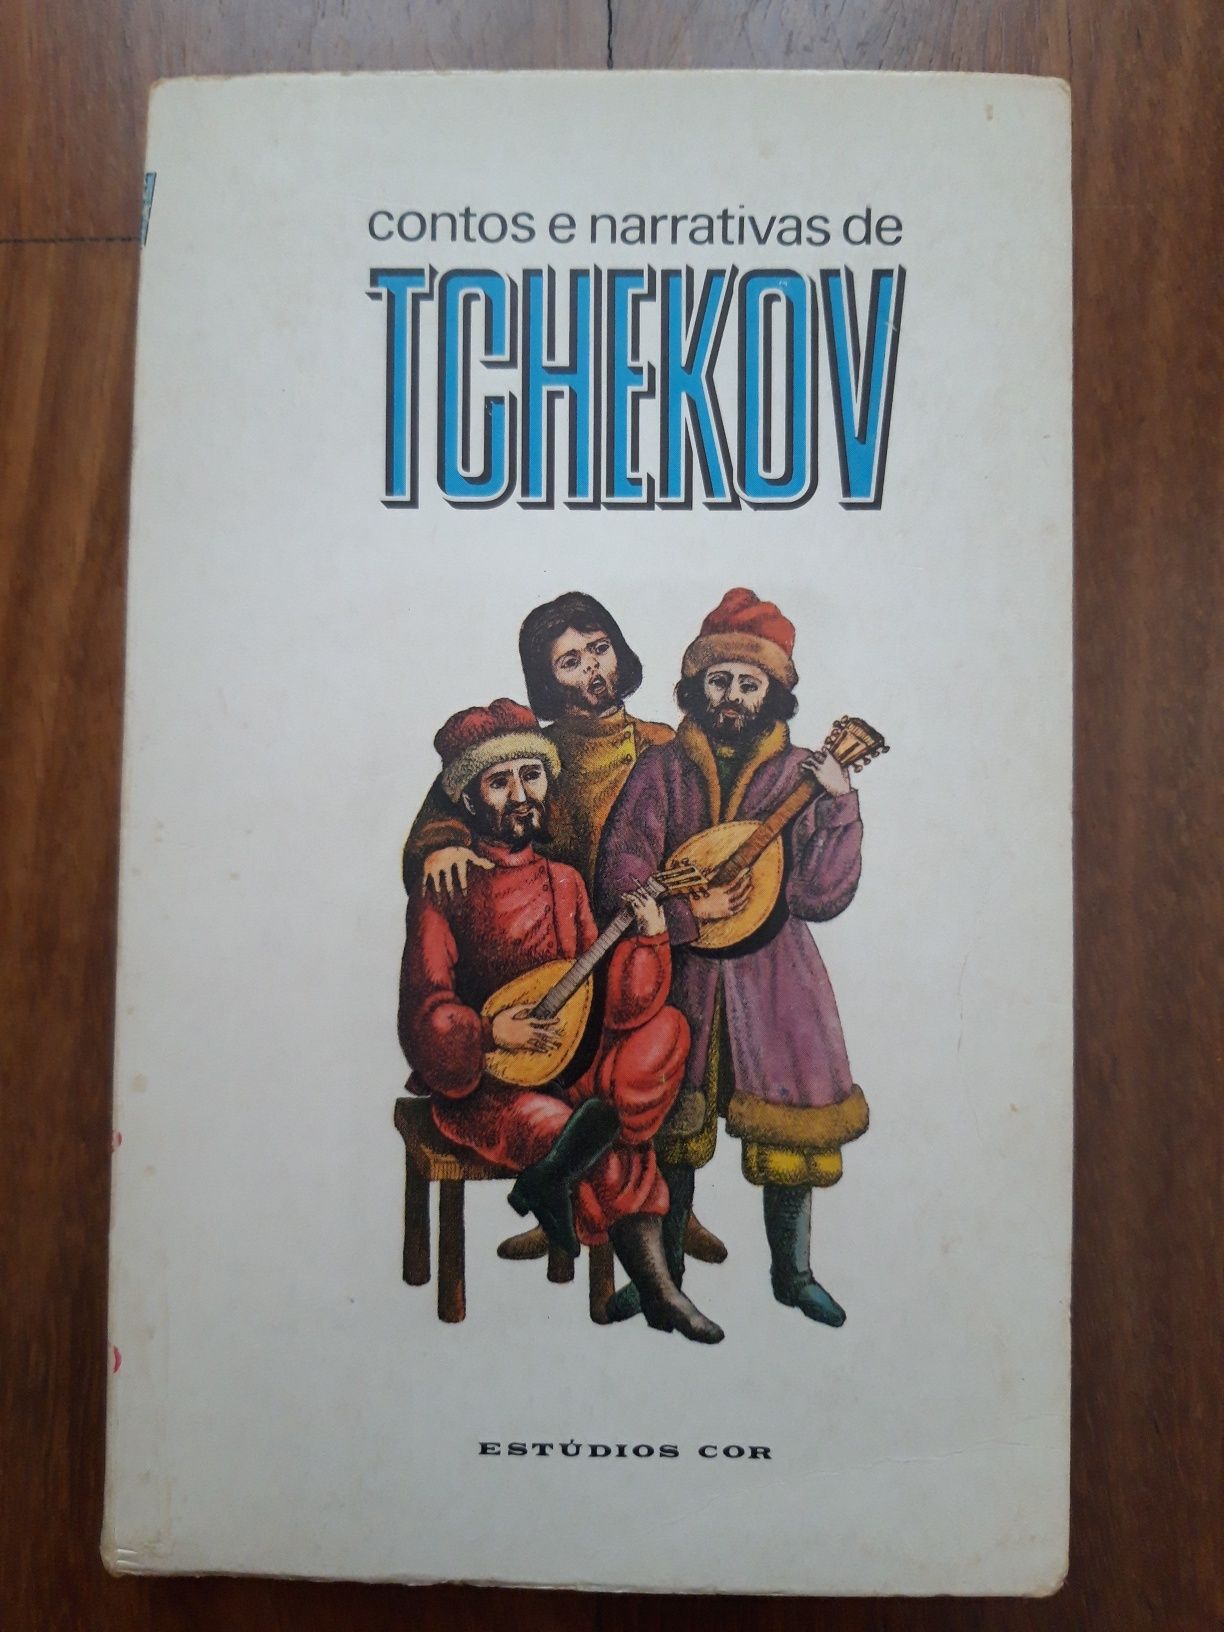 Livro "Contos e Narrativas" Vol. 12, de Tchekov